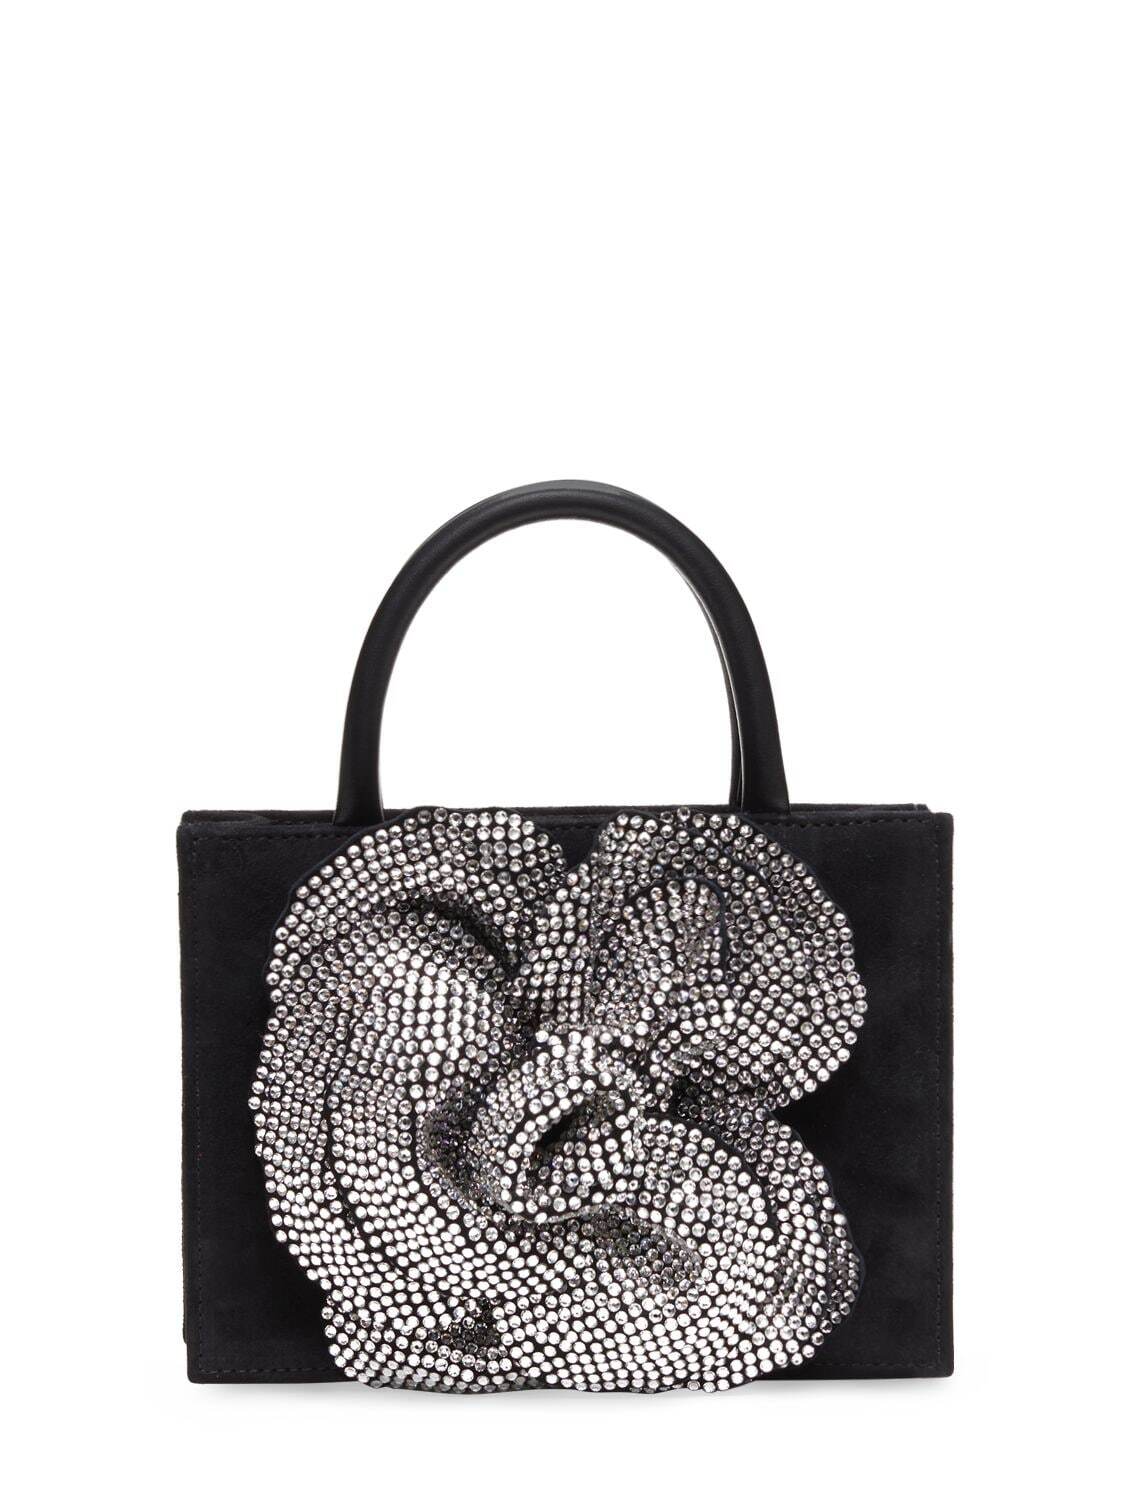 MACH & MACH Flower Satin & Crystal Top Handle Bag in black